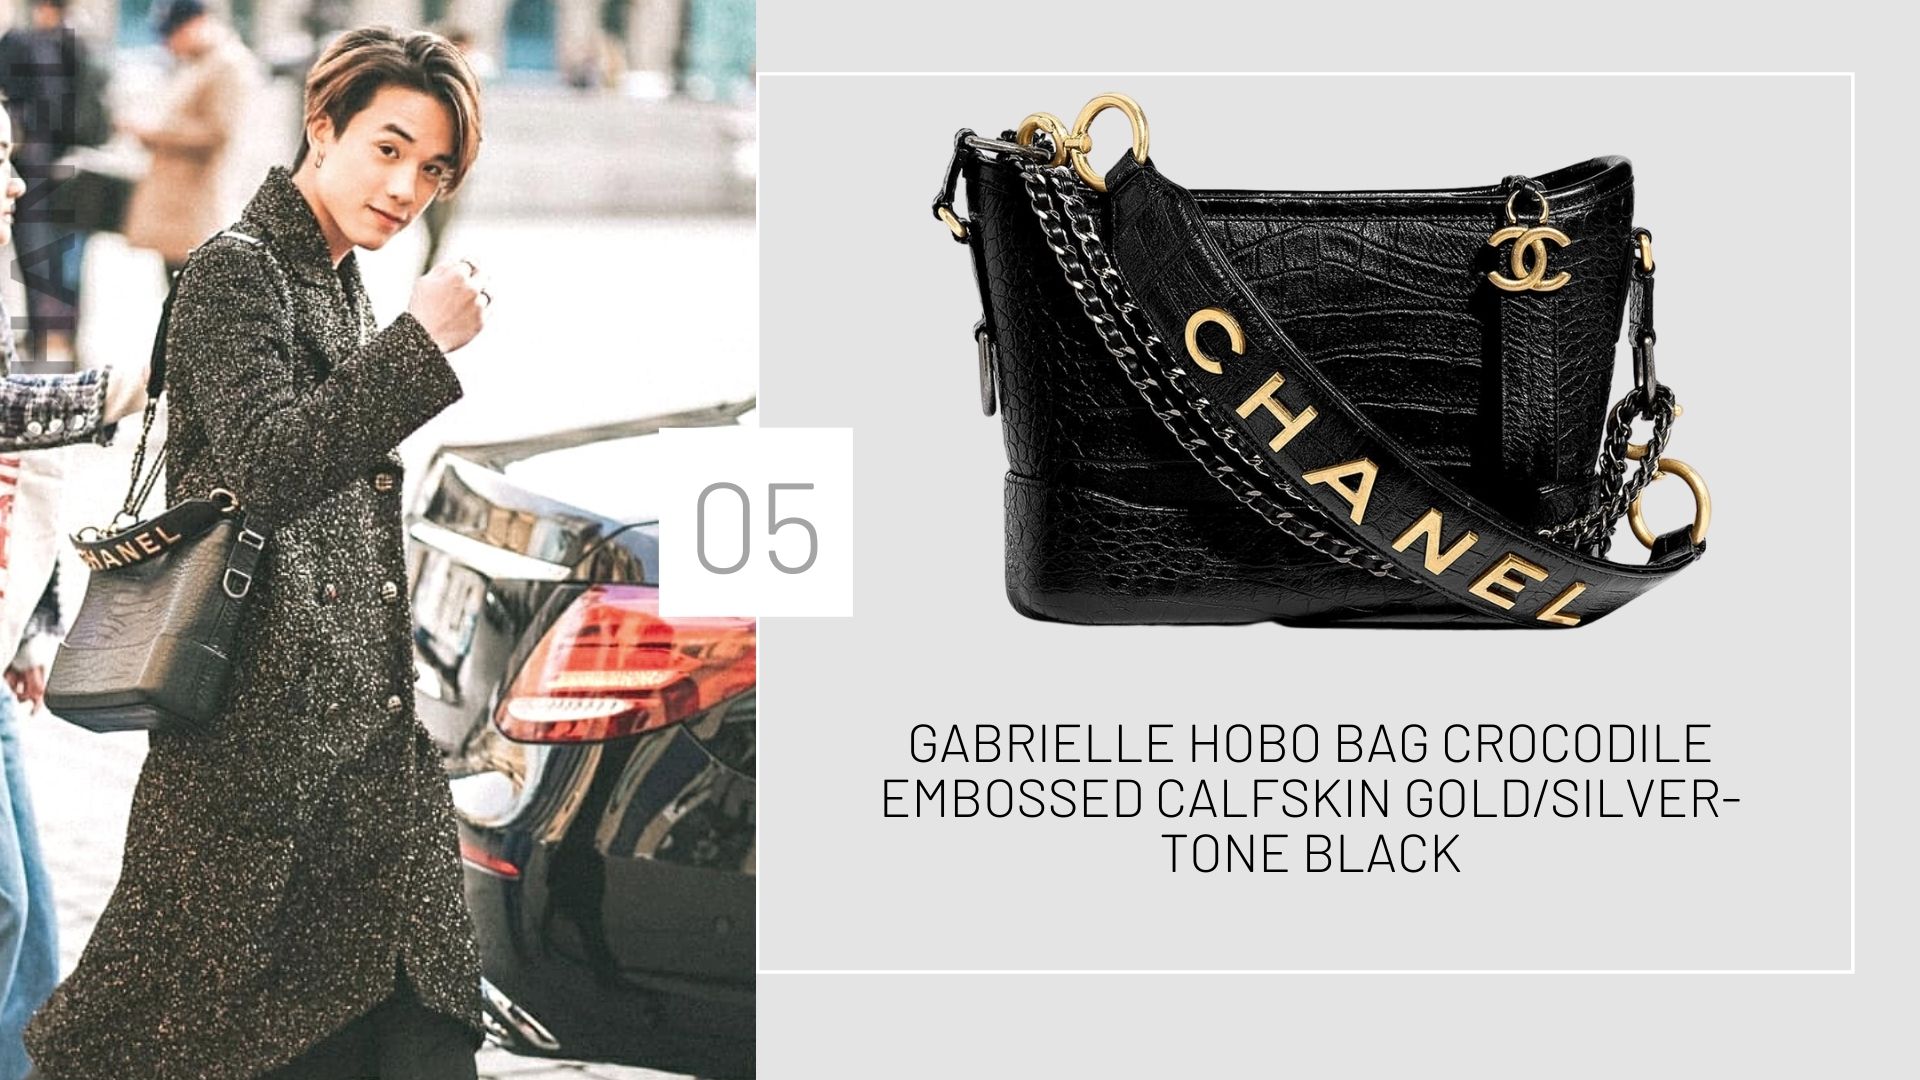 แฟชั่นชาแนล ของเจมส์มี่เจมส์ Gabrielle Hobo Bag Crocodile Embossed Calfskin Gold/Silver-tone Black